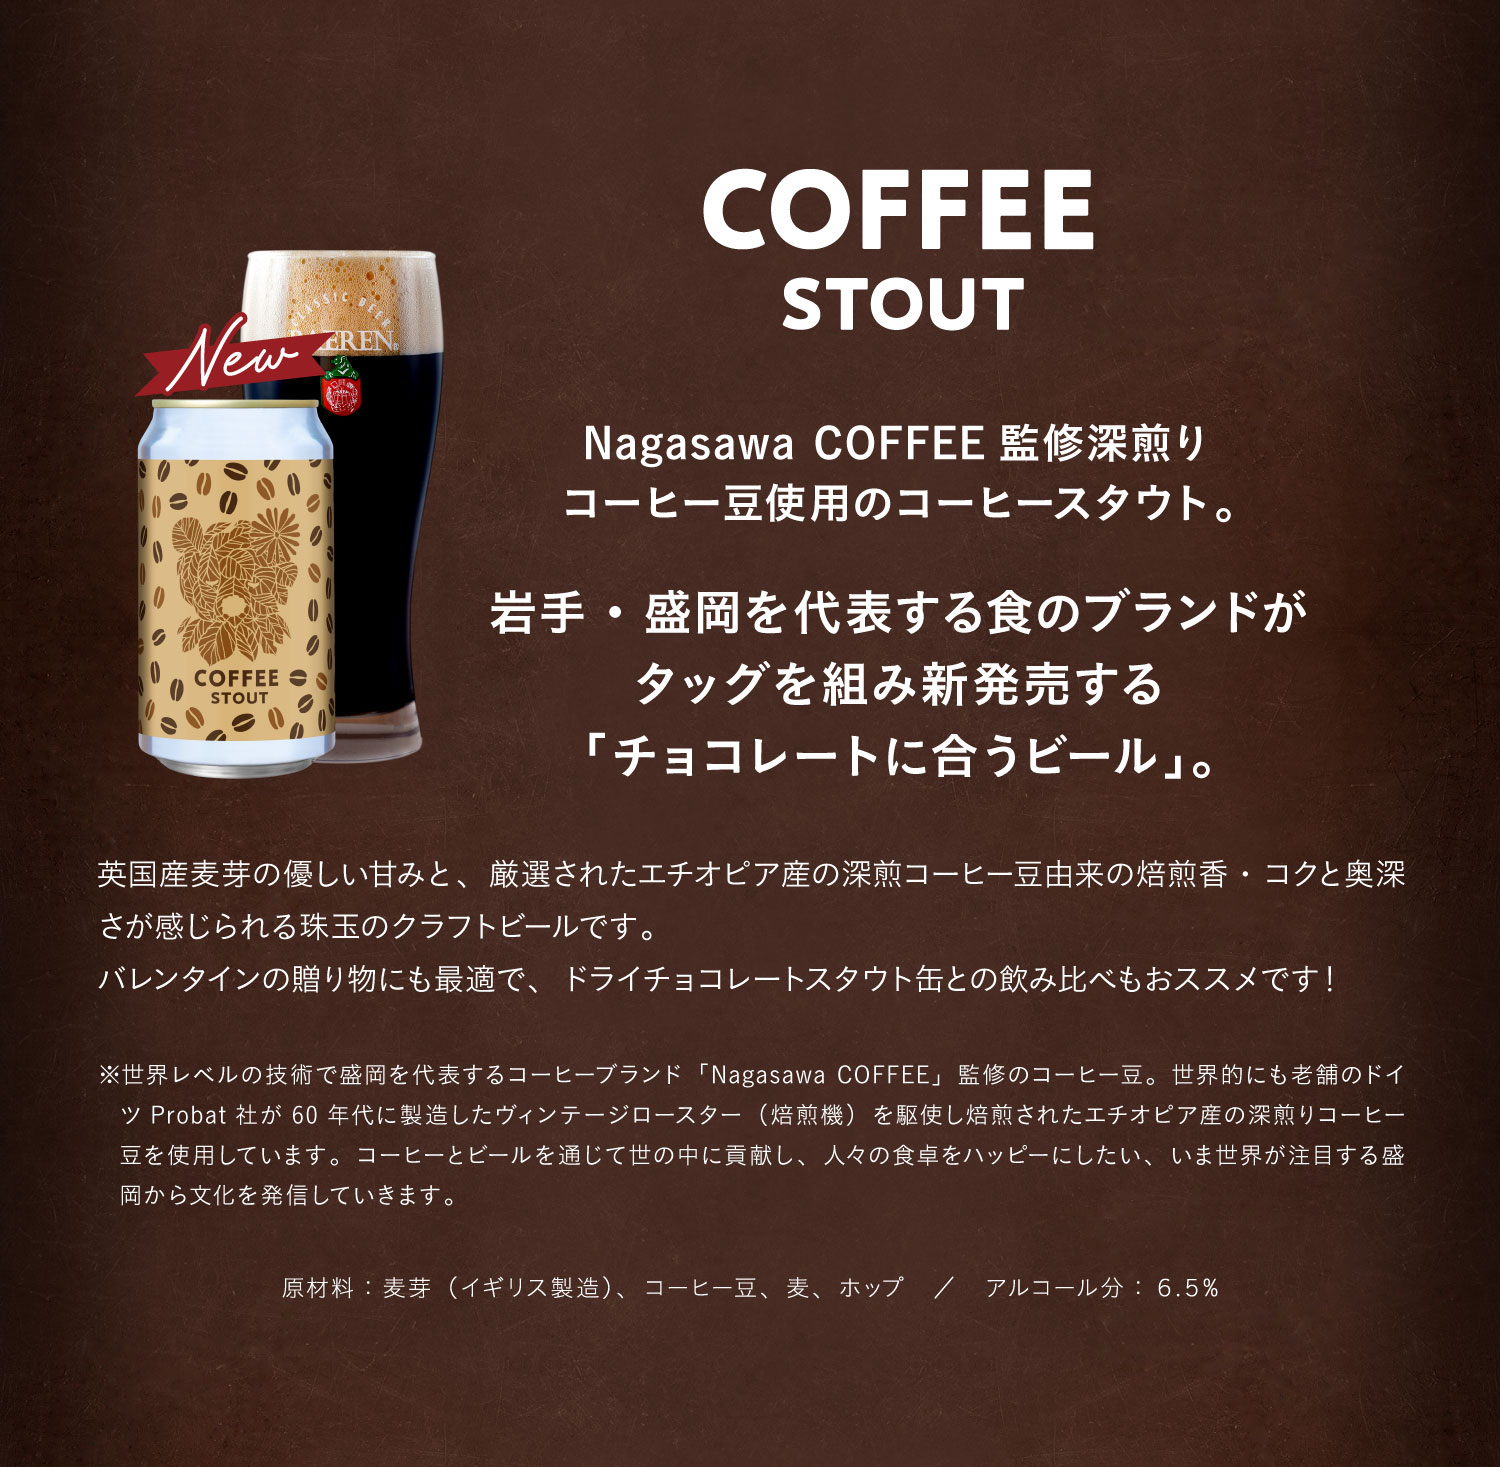 コーヒースタウト（COFFEE STOUT）Nagasawa COFFEE監修深煎りコーヒー豆使用のコーヒースタウト。岩手・盛岡を代表する食のブランドがタッグを組み新発売する「チョコレートに合うビール」。英国産麦芽の優しい甘みと、厳選されたエチオピア産の深煎コーヒー豆由来の焙煎香・コクと奥深さが感じられる珠玉のクラフトビールです。バレンタインの贈り物にも最適で、ドライチョコレートスタウト缶との飲み比べもおススメです！※世界レベルの技術で盛岡を代表するコーヒーブランド「Nagasawa COFFEE」監修のコーヒー豆。世界的にも老舗のドイツProbat社が60年代に製造したヴィンテージロースター（焙煎機）を駆使し焙煎されたエチオピア産の深煎りコーヒー豆を使用しています。コーヒーとビールを通じて世の中に貢献し、人々の食卓をハッピーにしたい、いま世界が注目する盛岡から文化を発信していきます。原材料：麦芽（イギリス製造）、コーヒー豆、麦、ホップ。アルコール分：６.５%